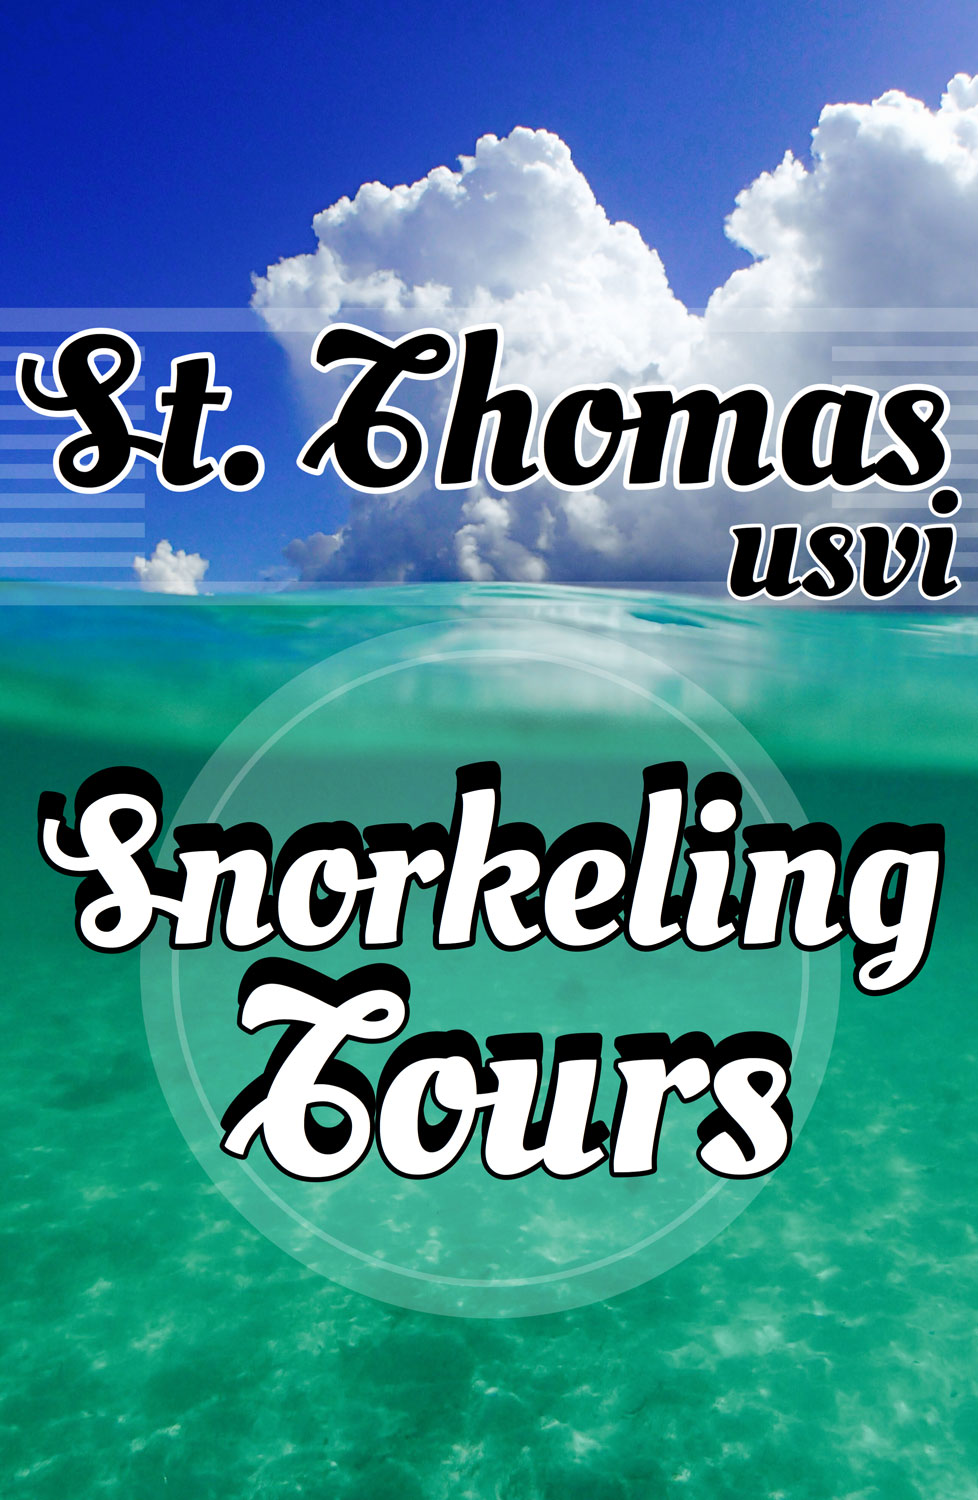 St. Thomas Snorkeling Tours